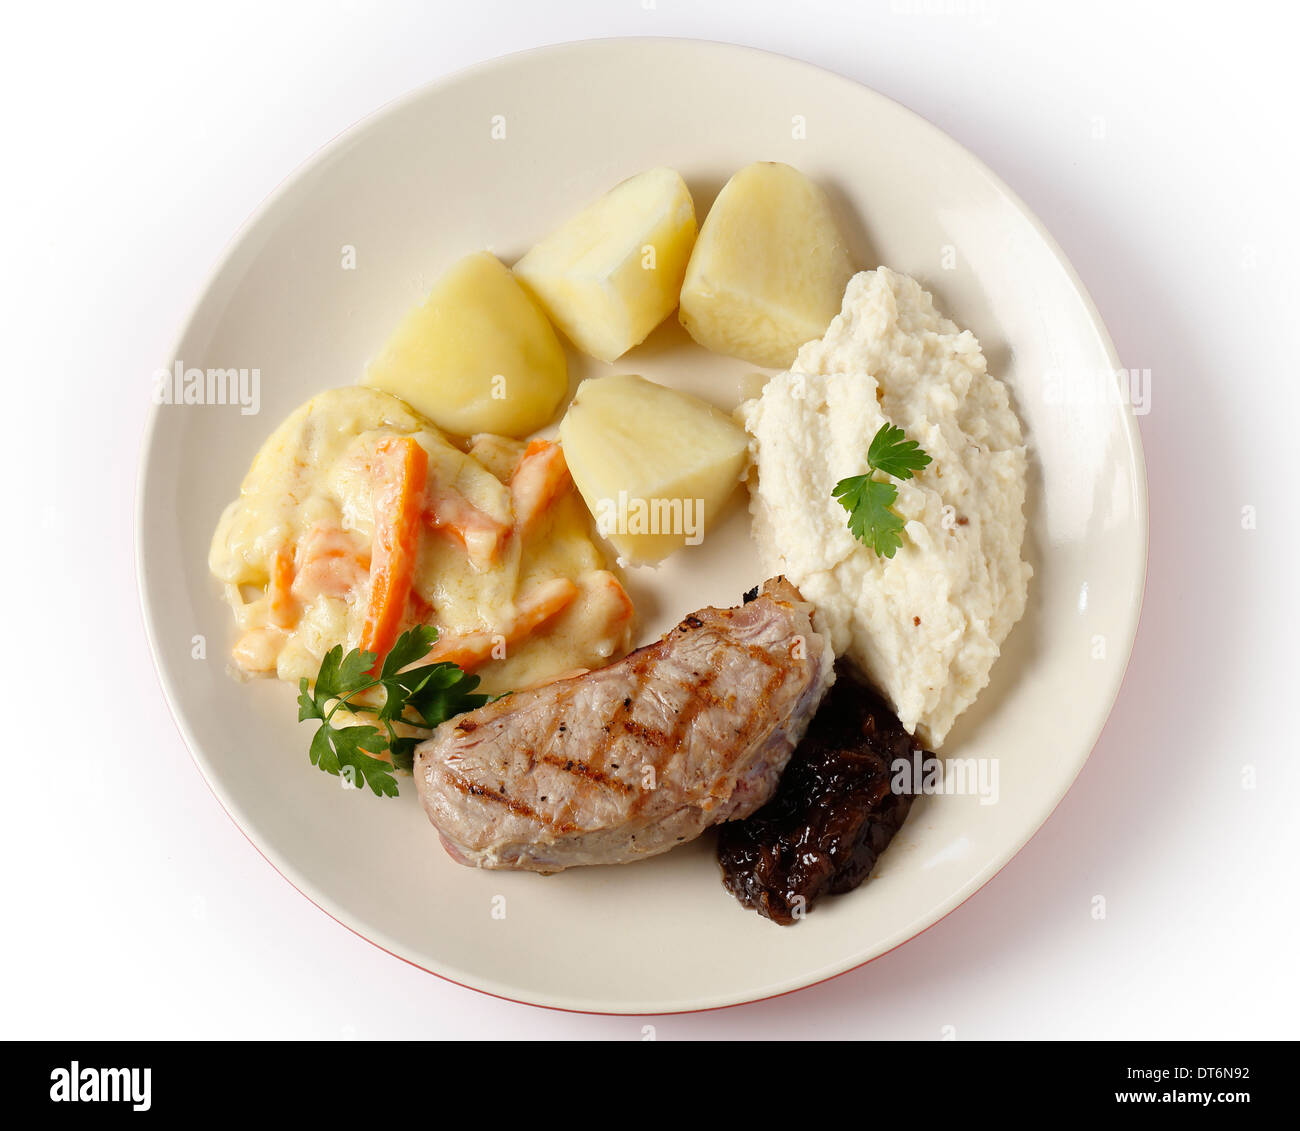 Steak de surlonge de veau avec confiture d'oignons, purée de céleri-rave, la julienne de carottes dans une sauce blanche et des pommes de terre bouillies Banque D'Images